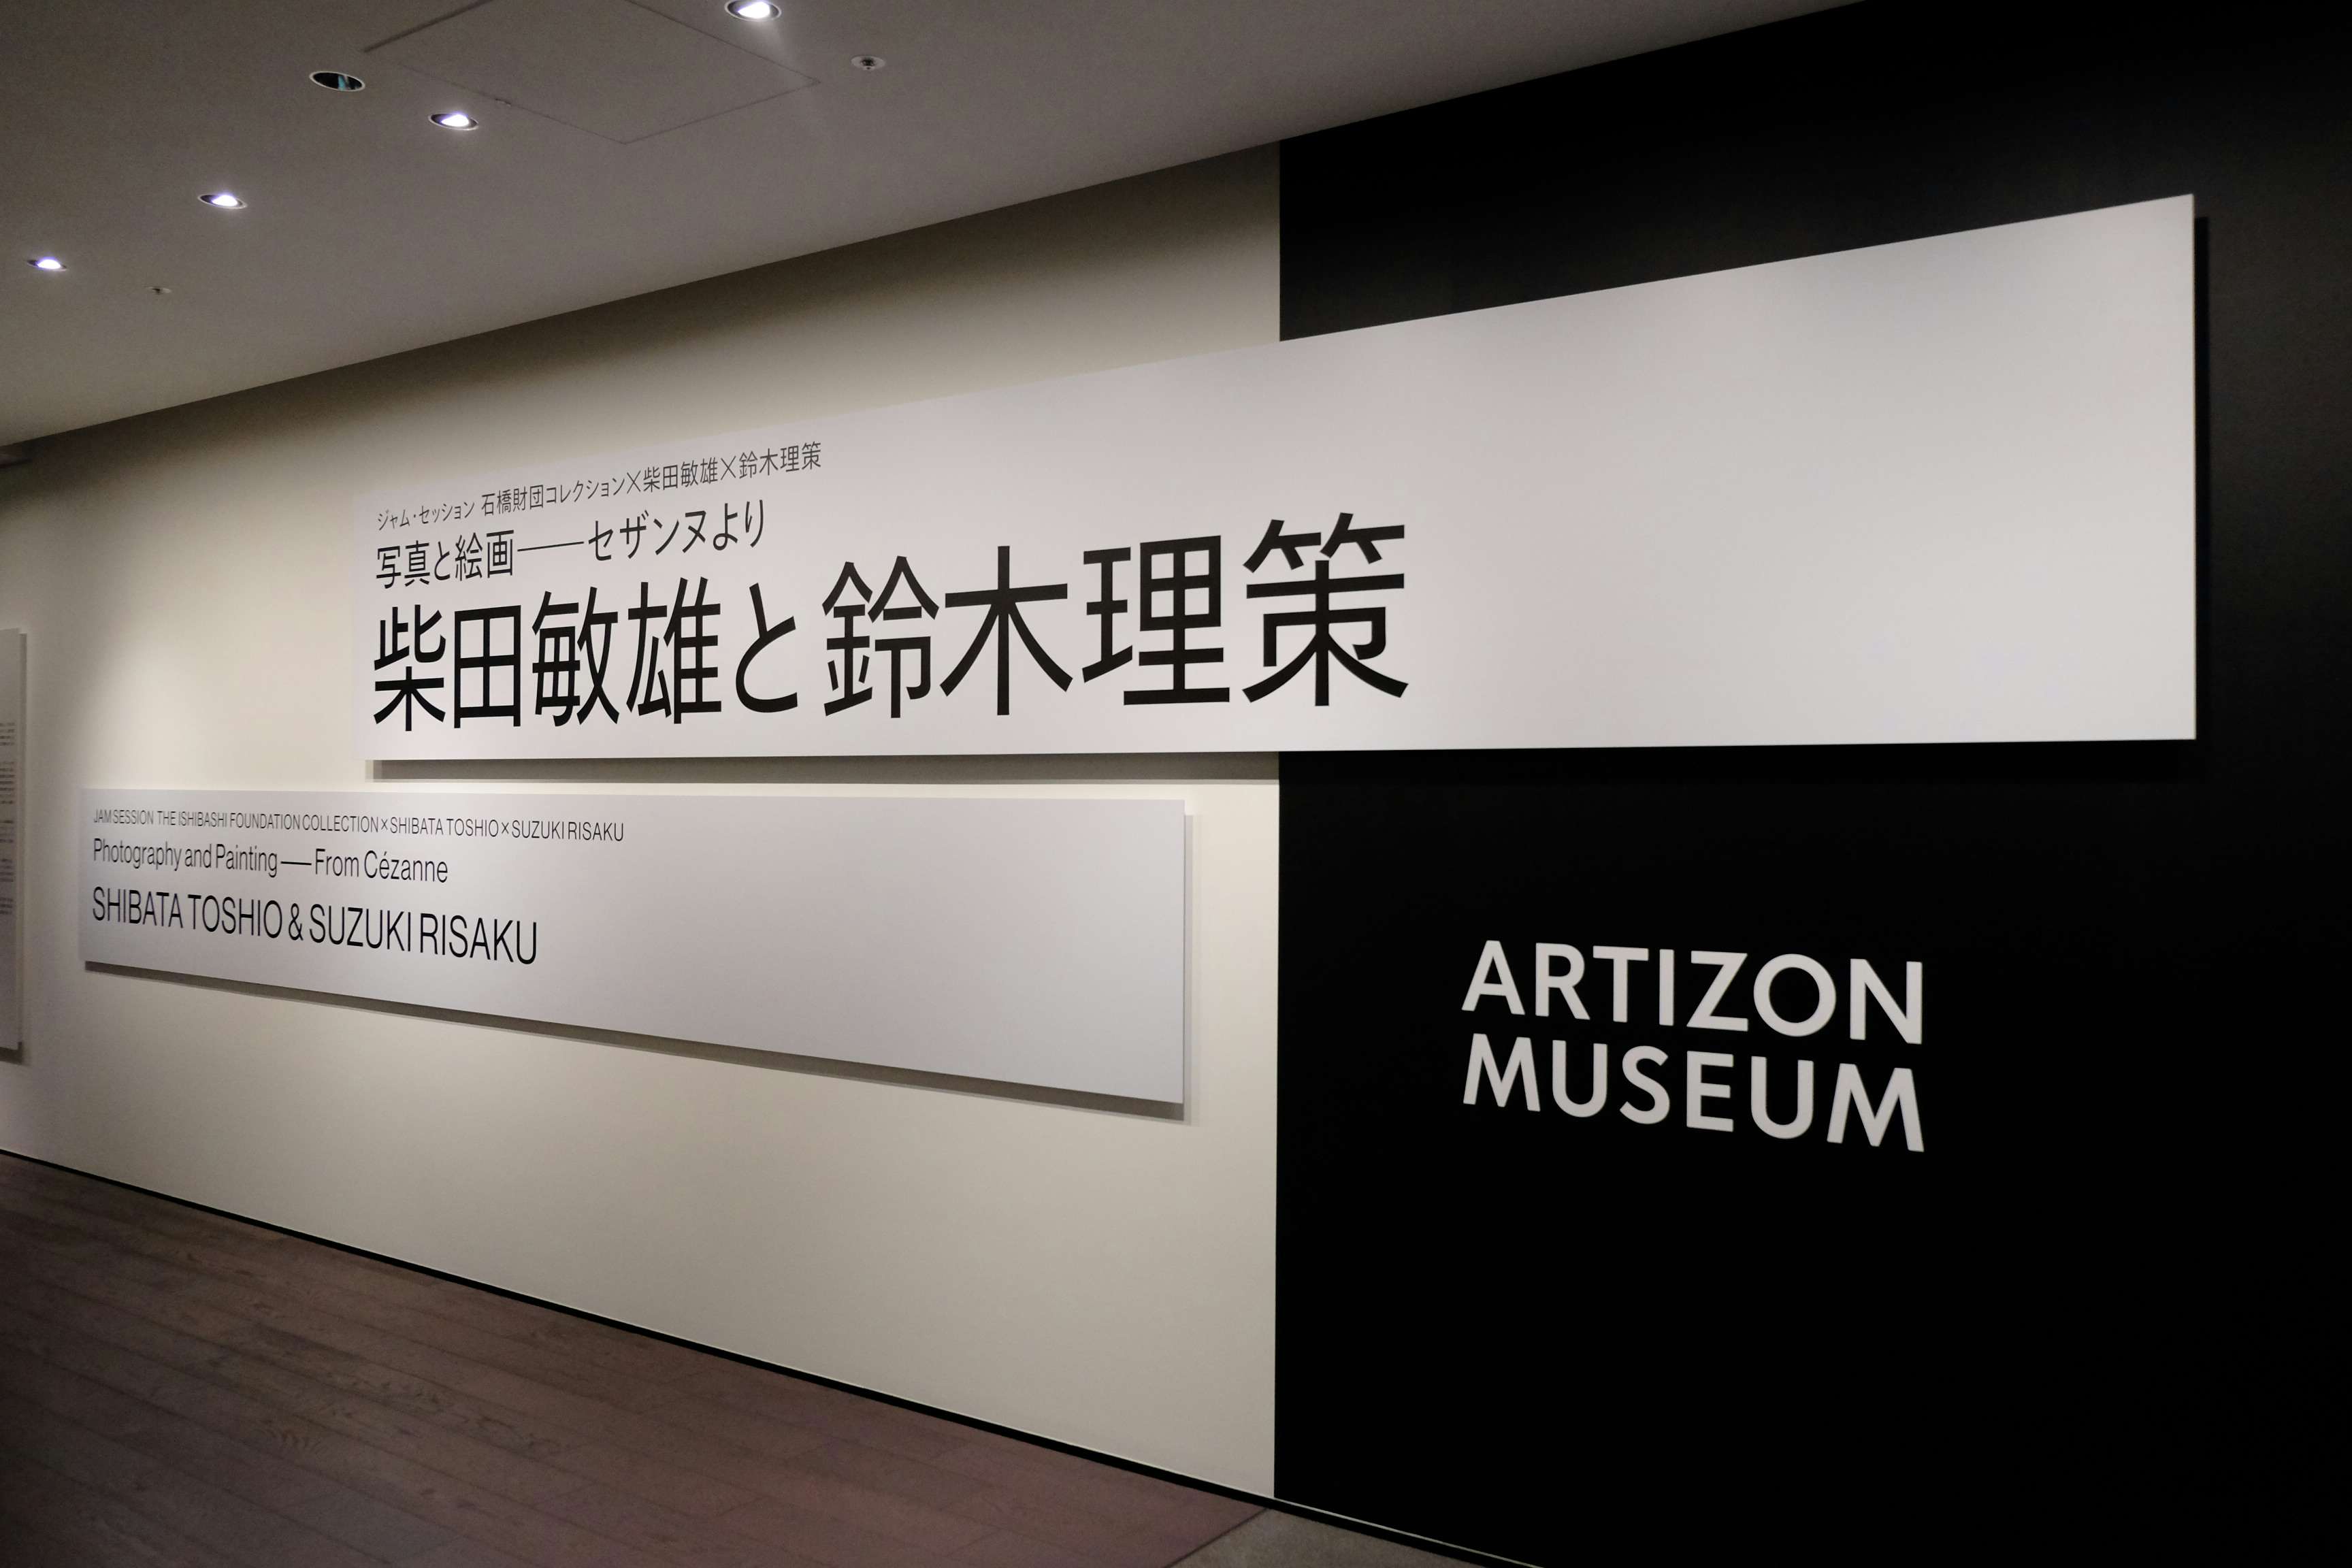 柴田敏雄と鈴木理策がとらえた「絵画」とは。アーティゾン美術館に見る 